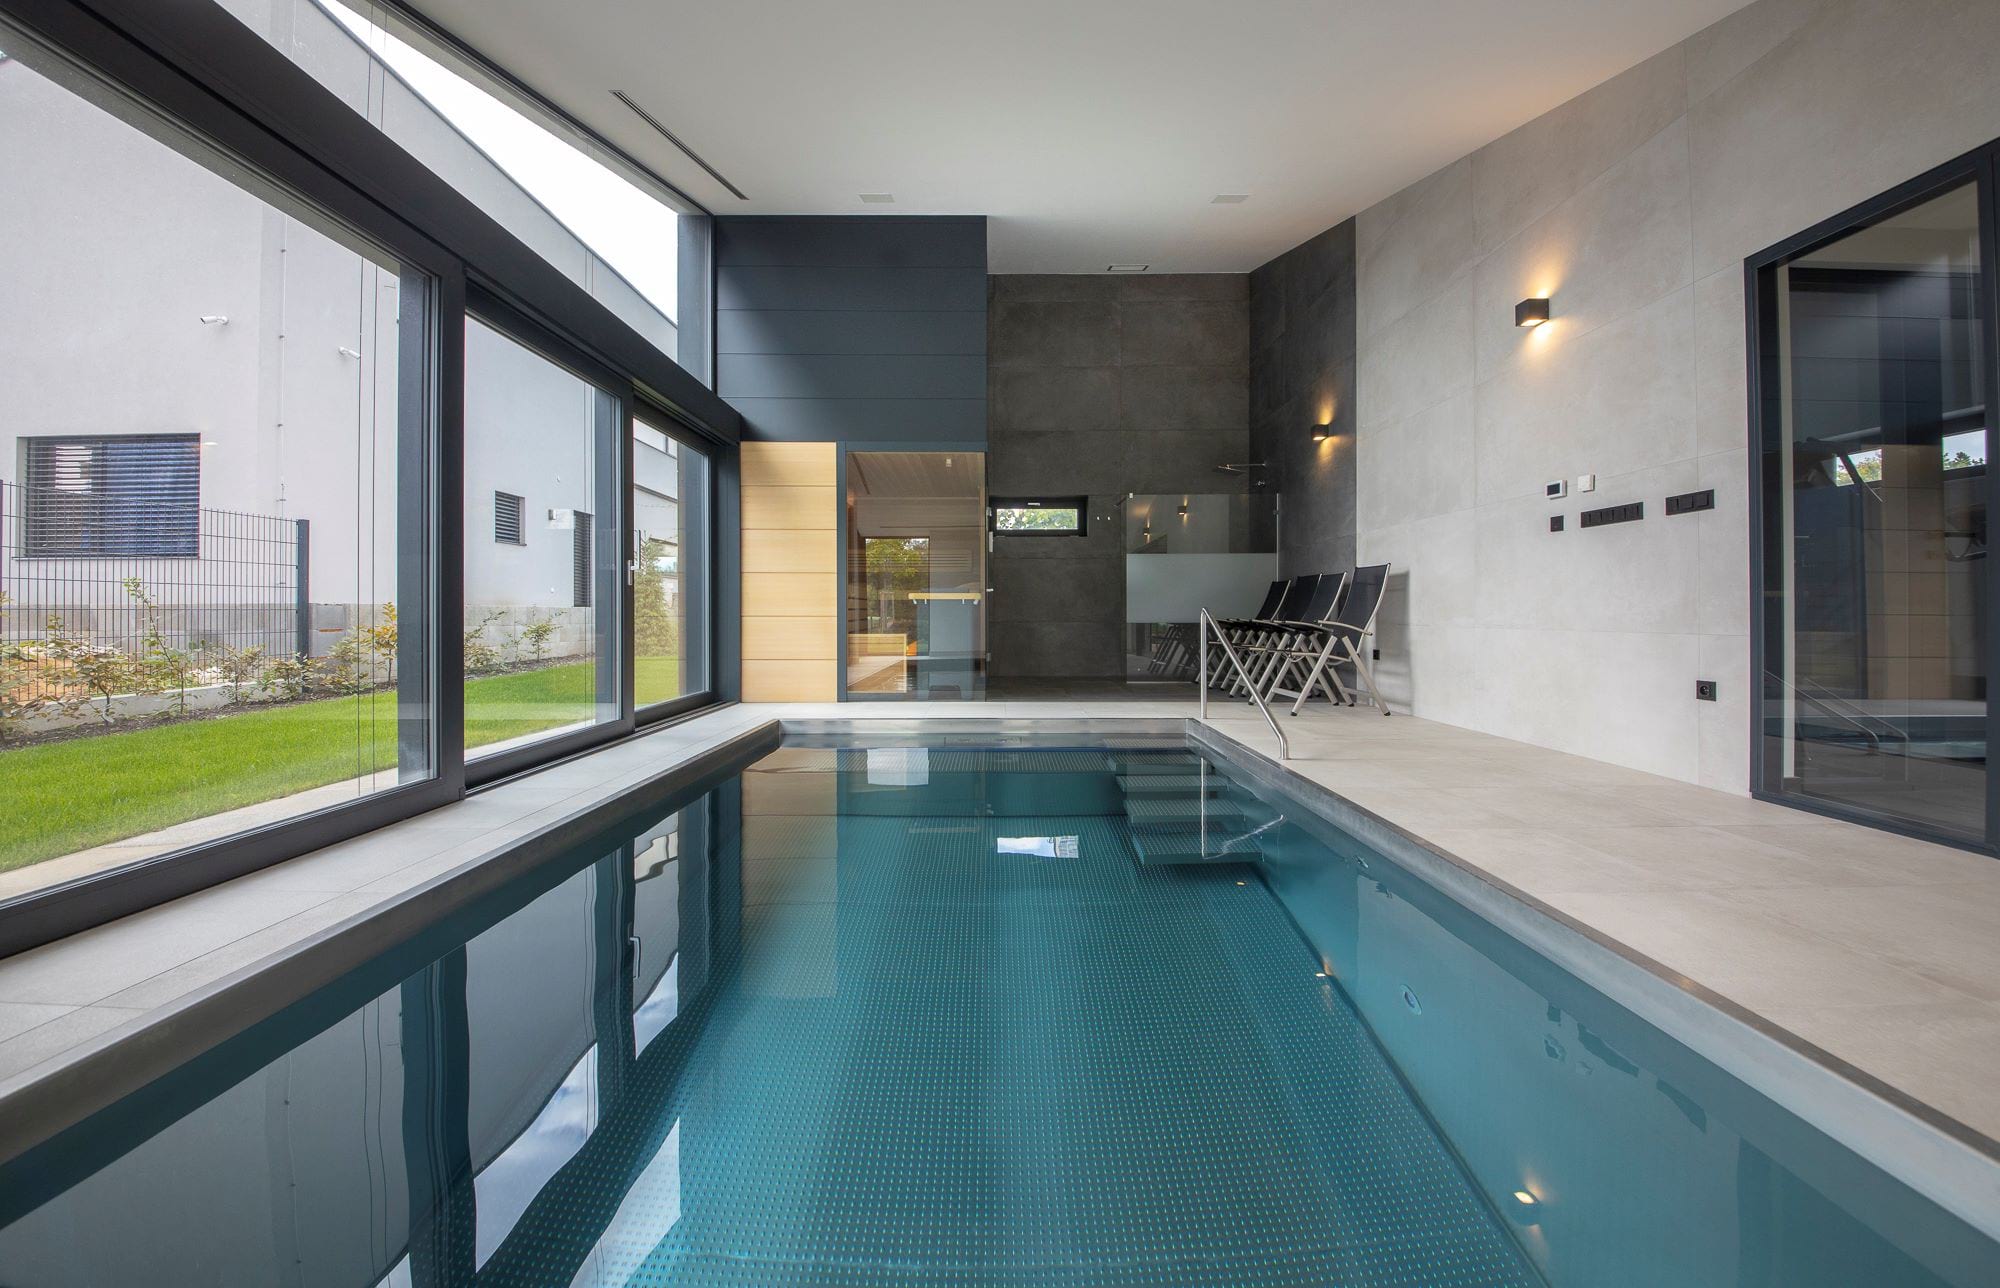 Malý interiérový bazén s výkonným protiproudem | IMAGINOX